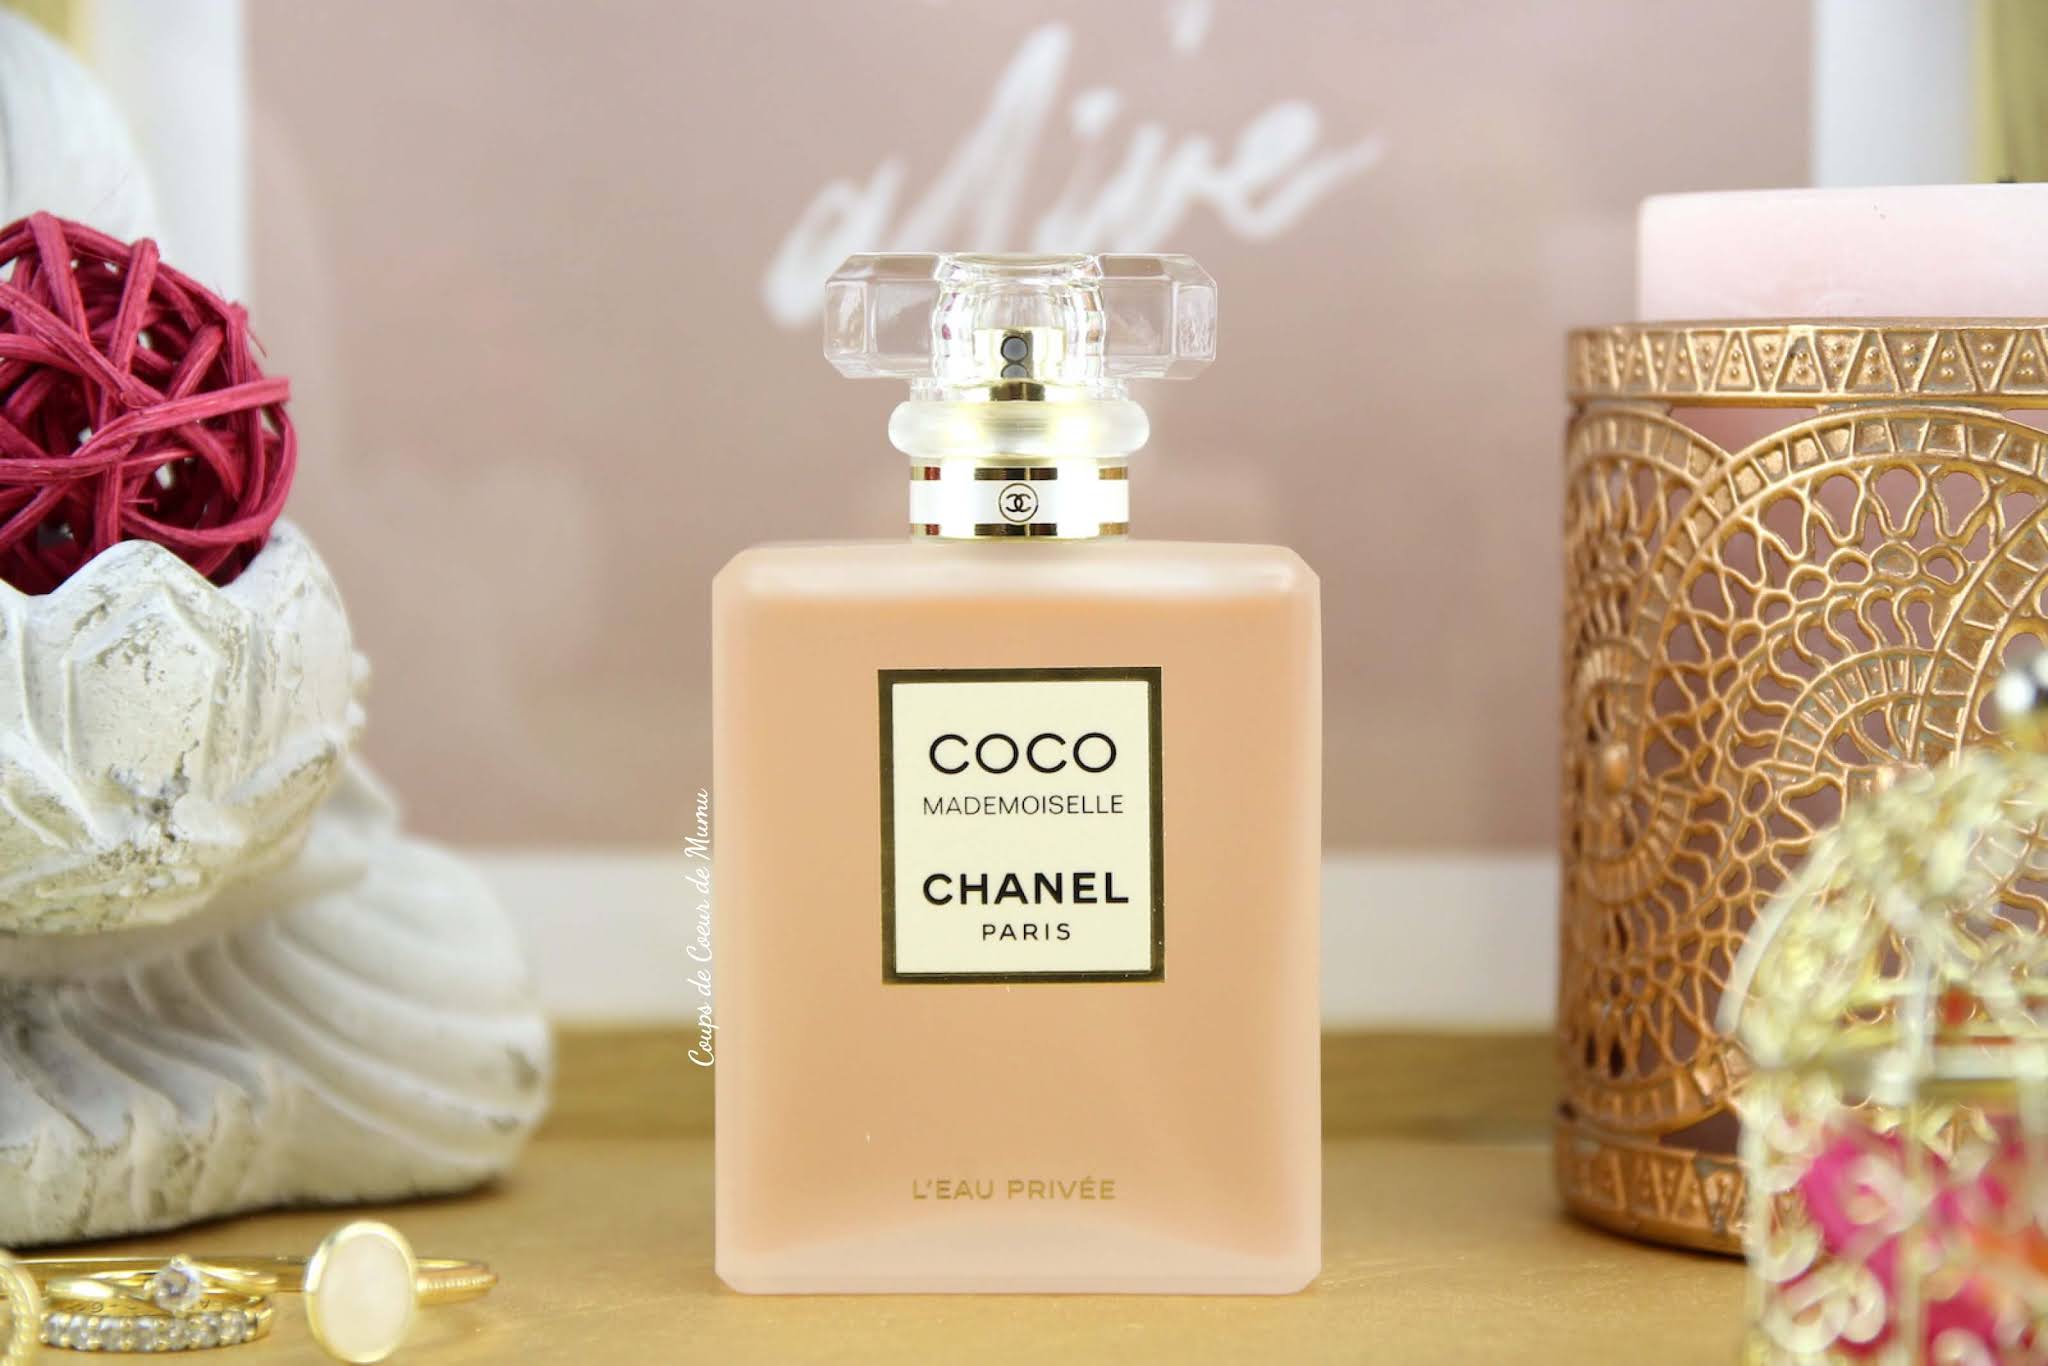 Coco Mademoiselle L'Eau Privée de Chanel, le Parfum pour la Nuit - Coups de  Coeur de Mumu